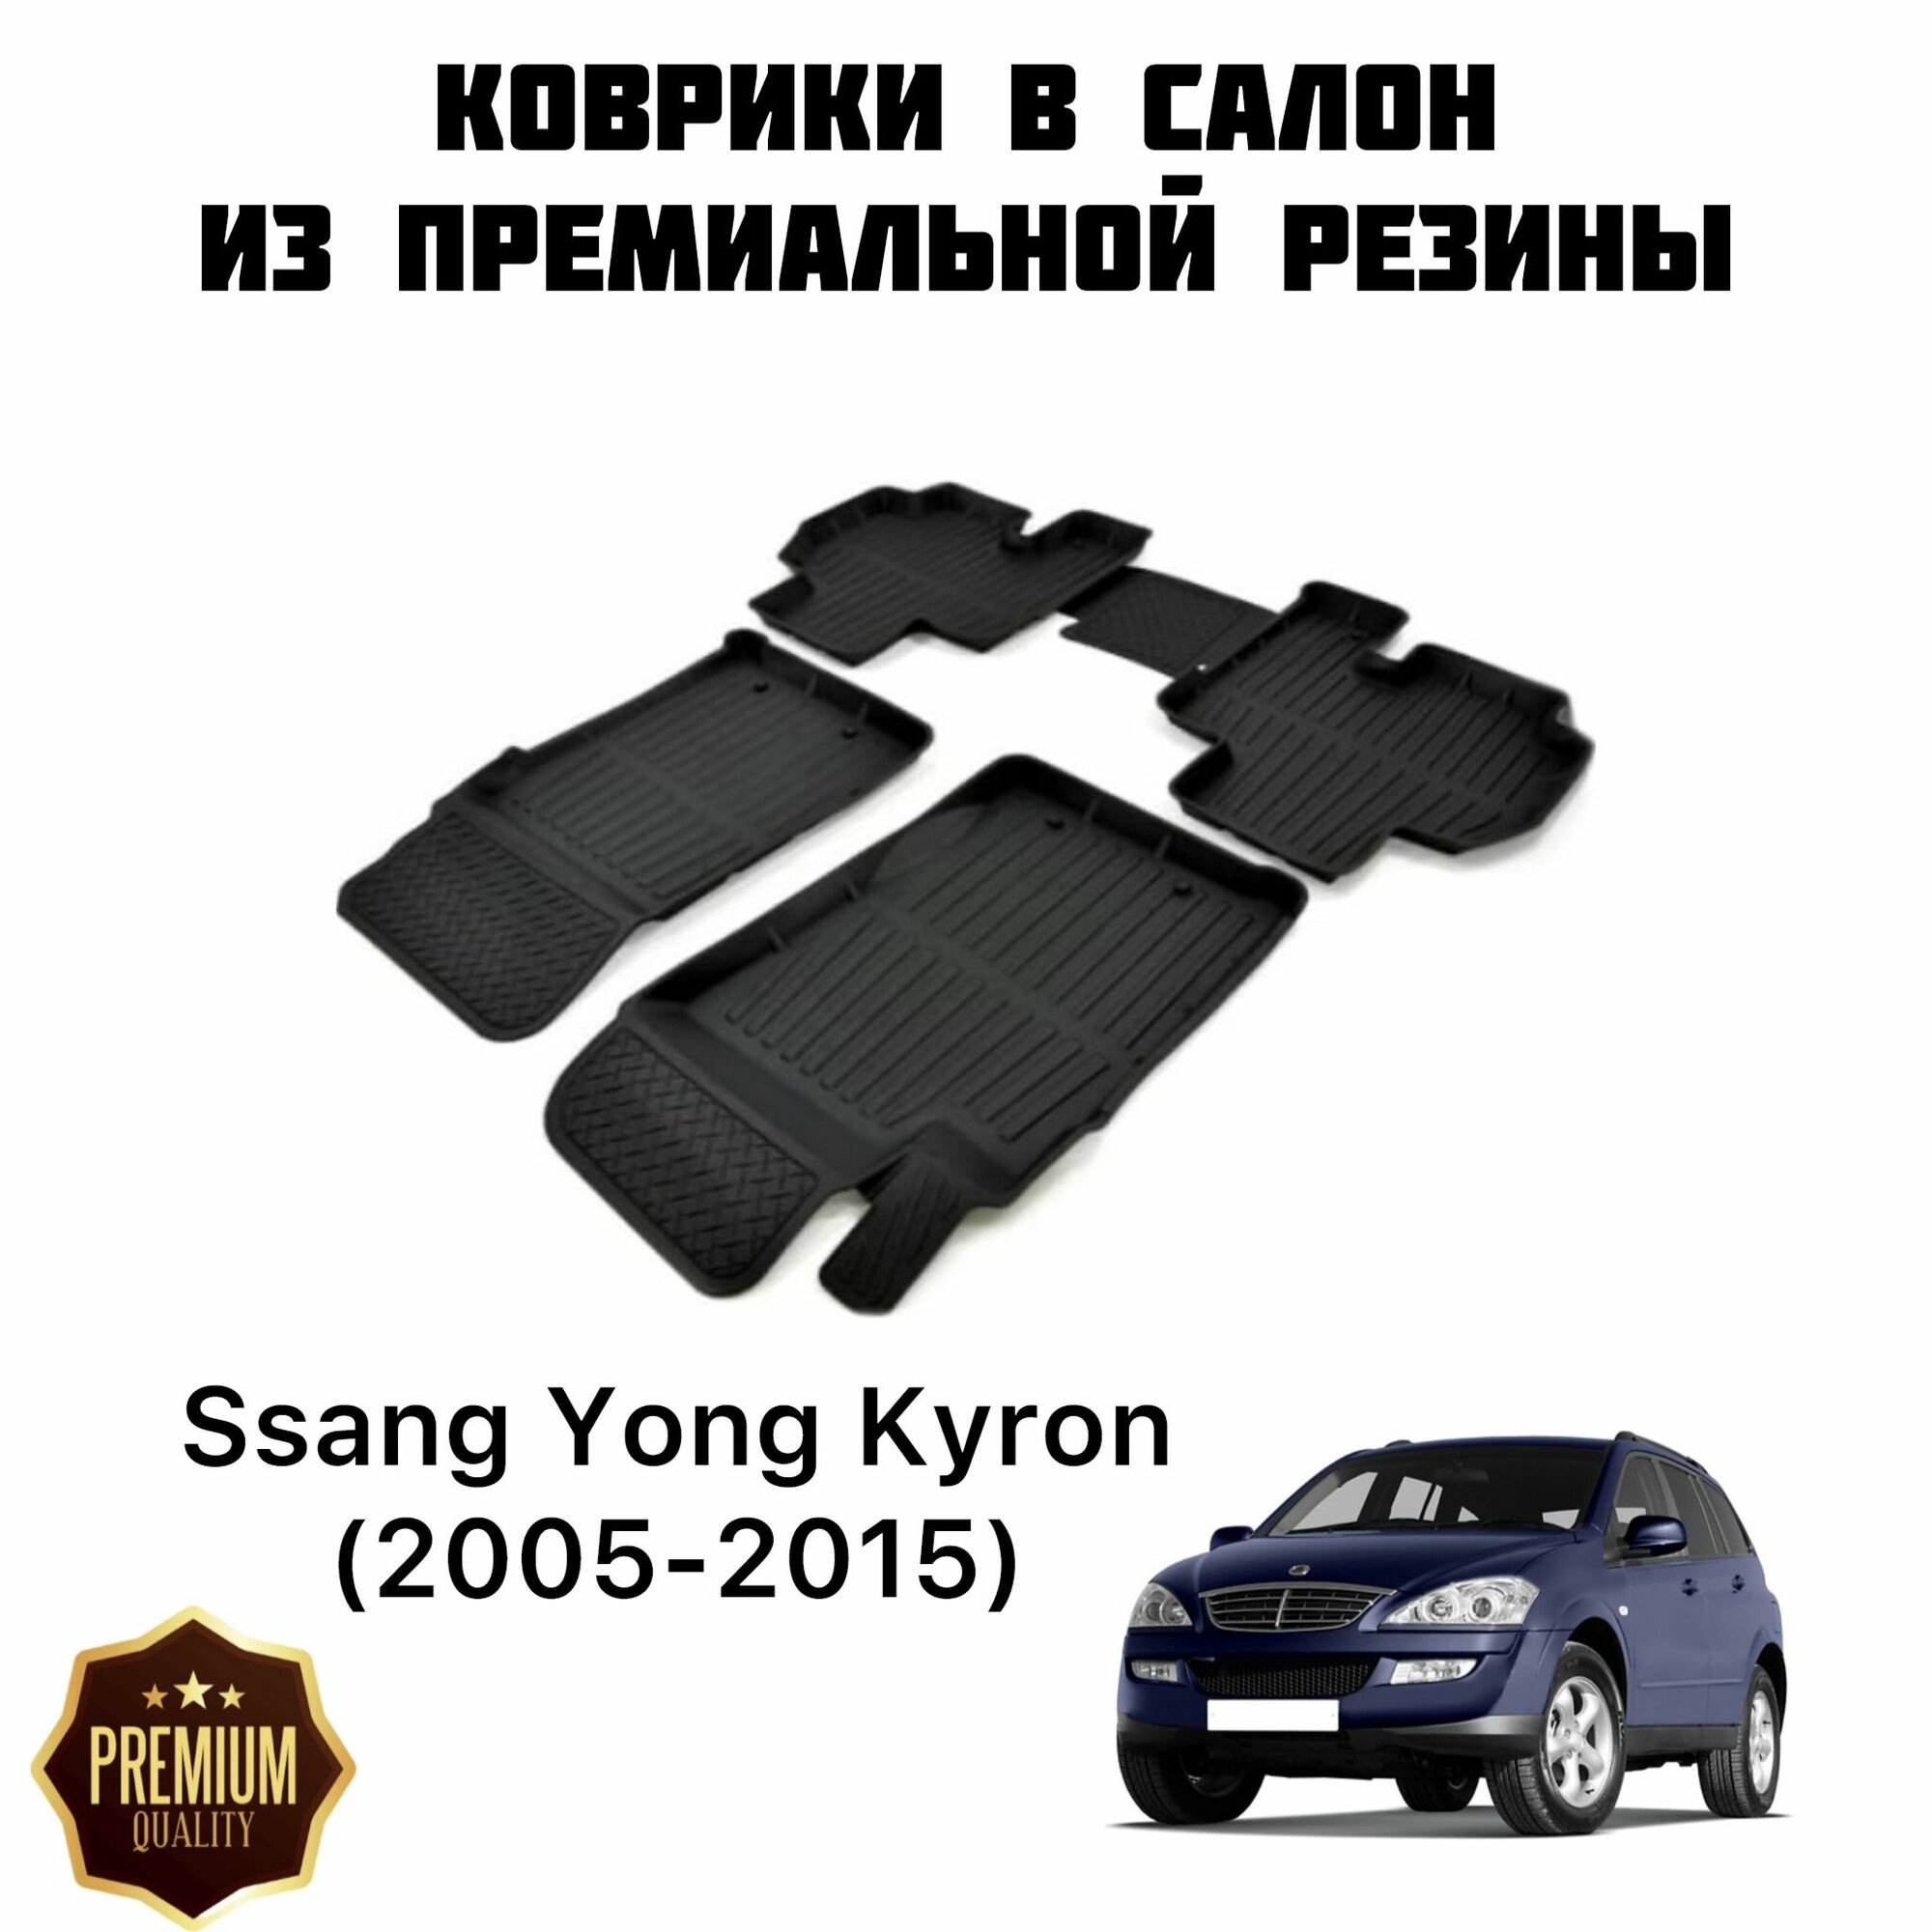 Резиновые коврики 3D PREMIUM для Ssang Yong Kyron (2005-2015) / Коврики Ссанг енг кайрон